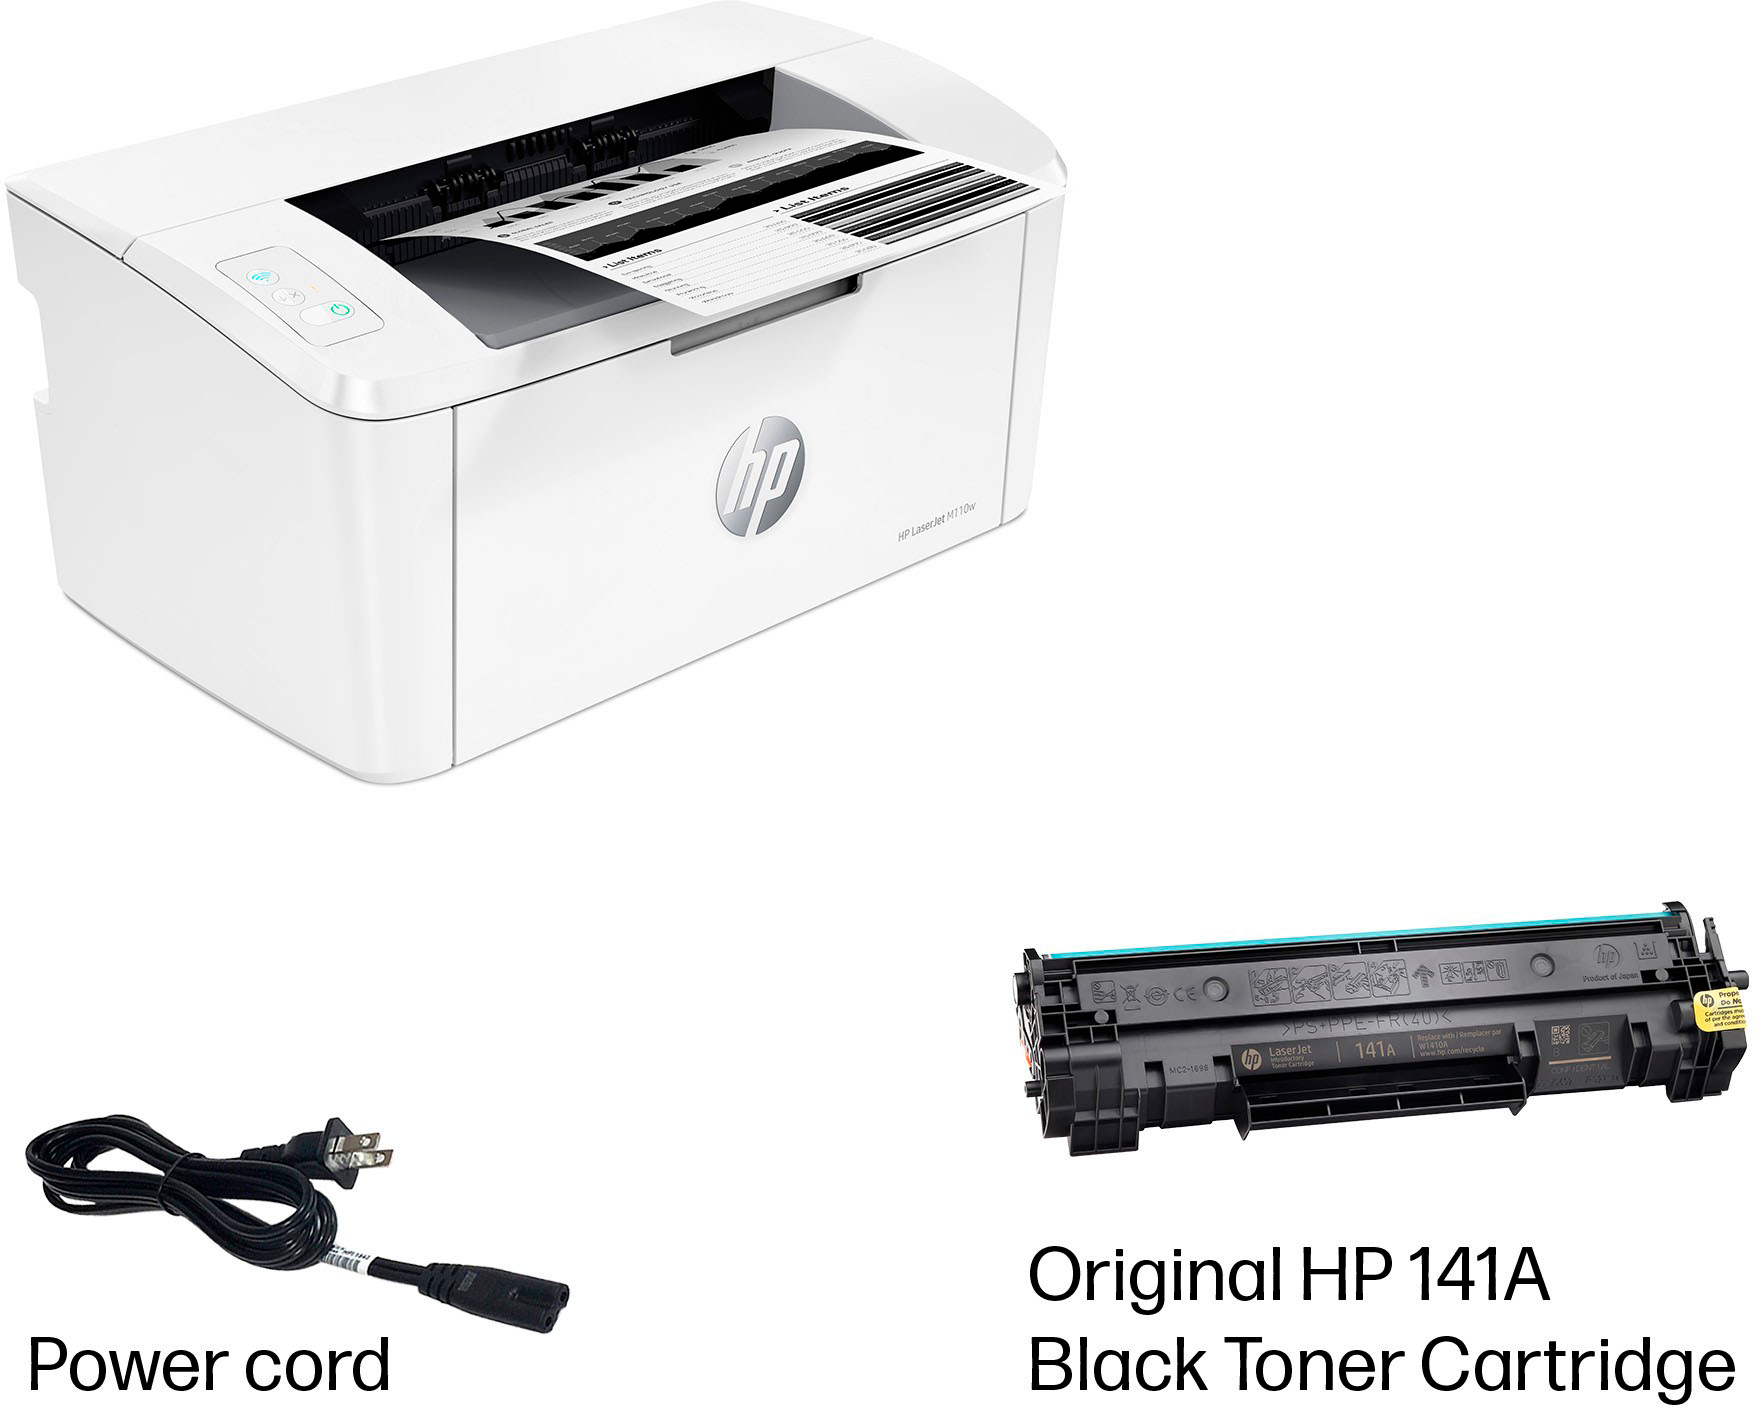 Brother HL-L2400D Black-and-White Laser Printer Gray HL-L2400D - Best Buy